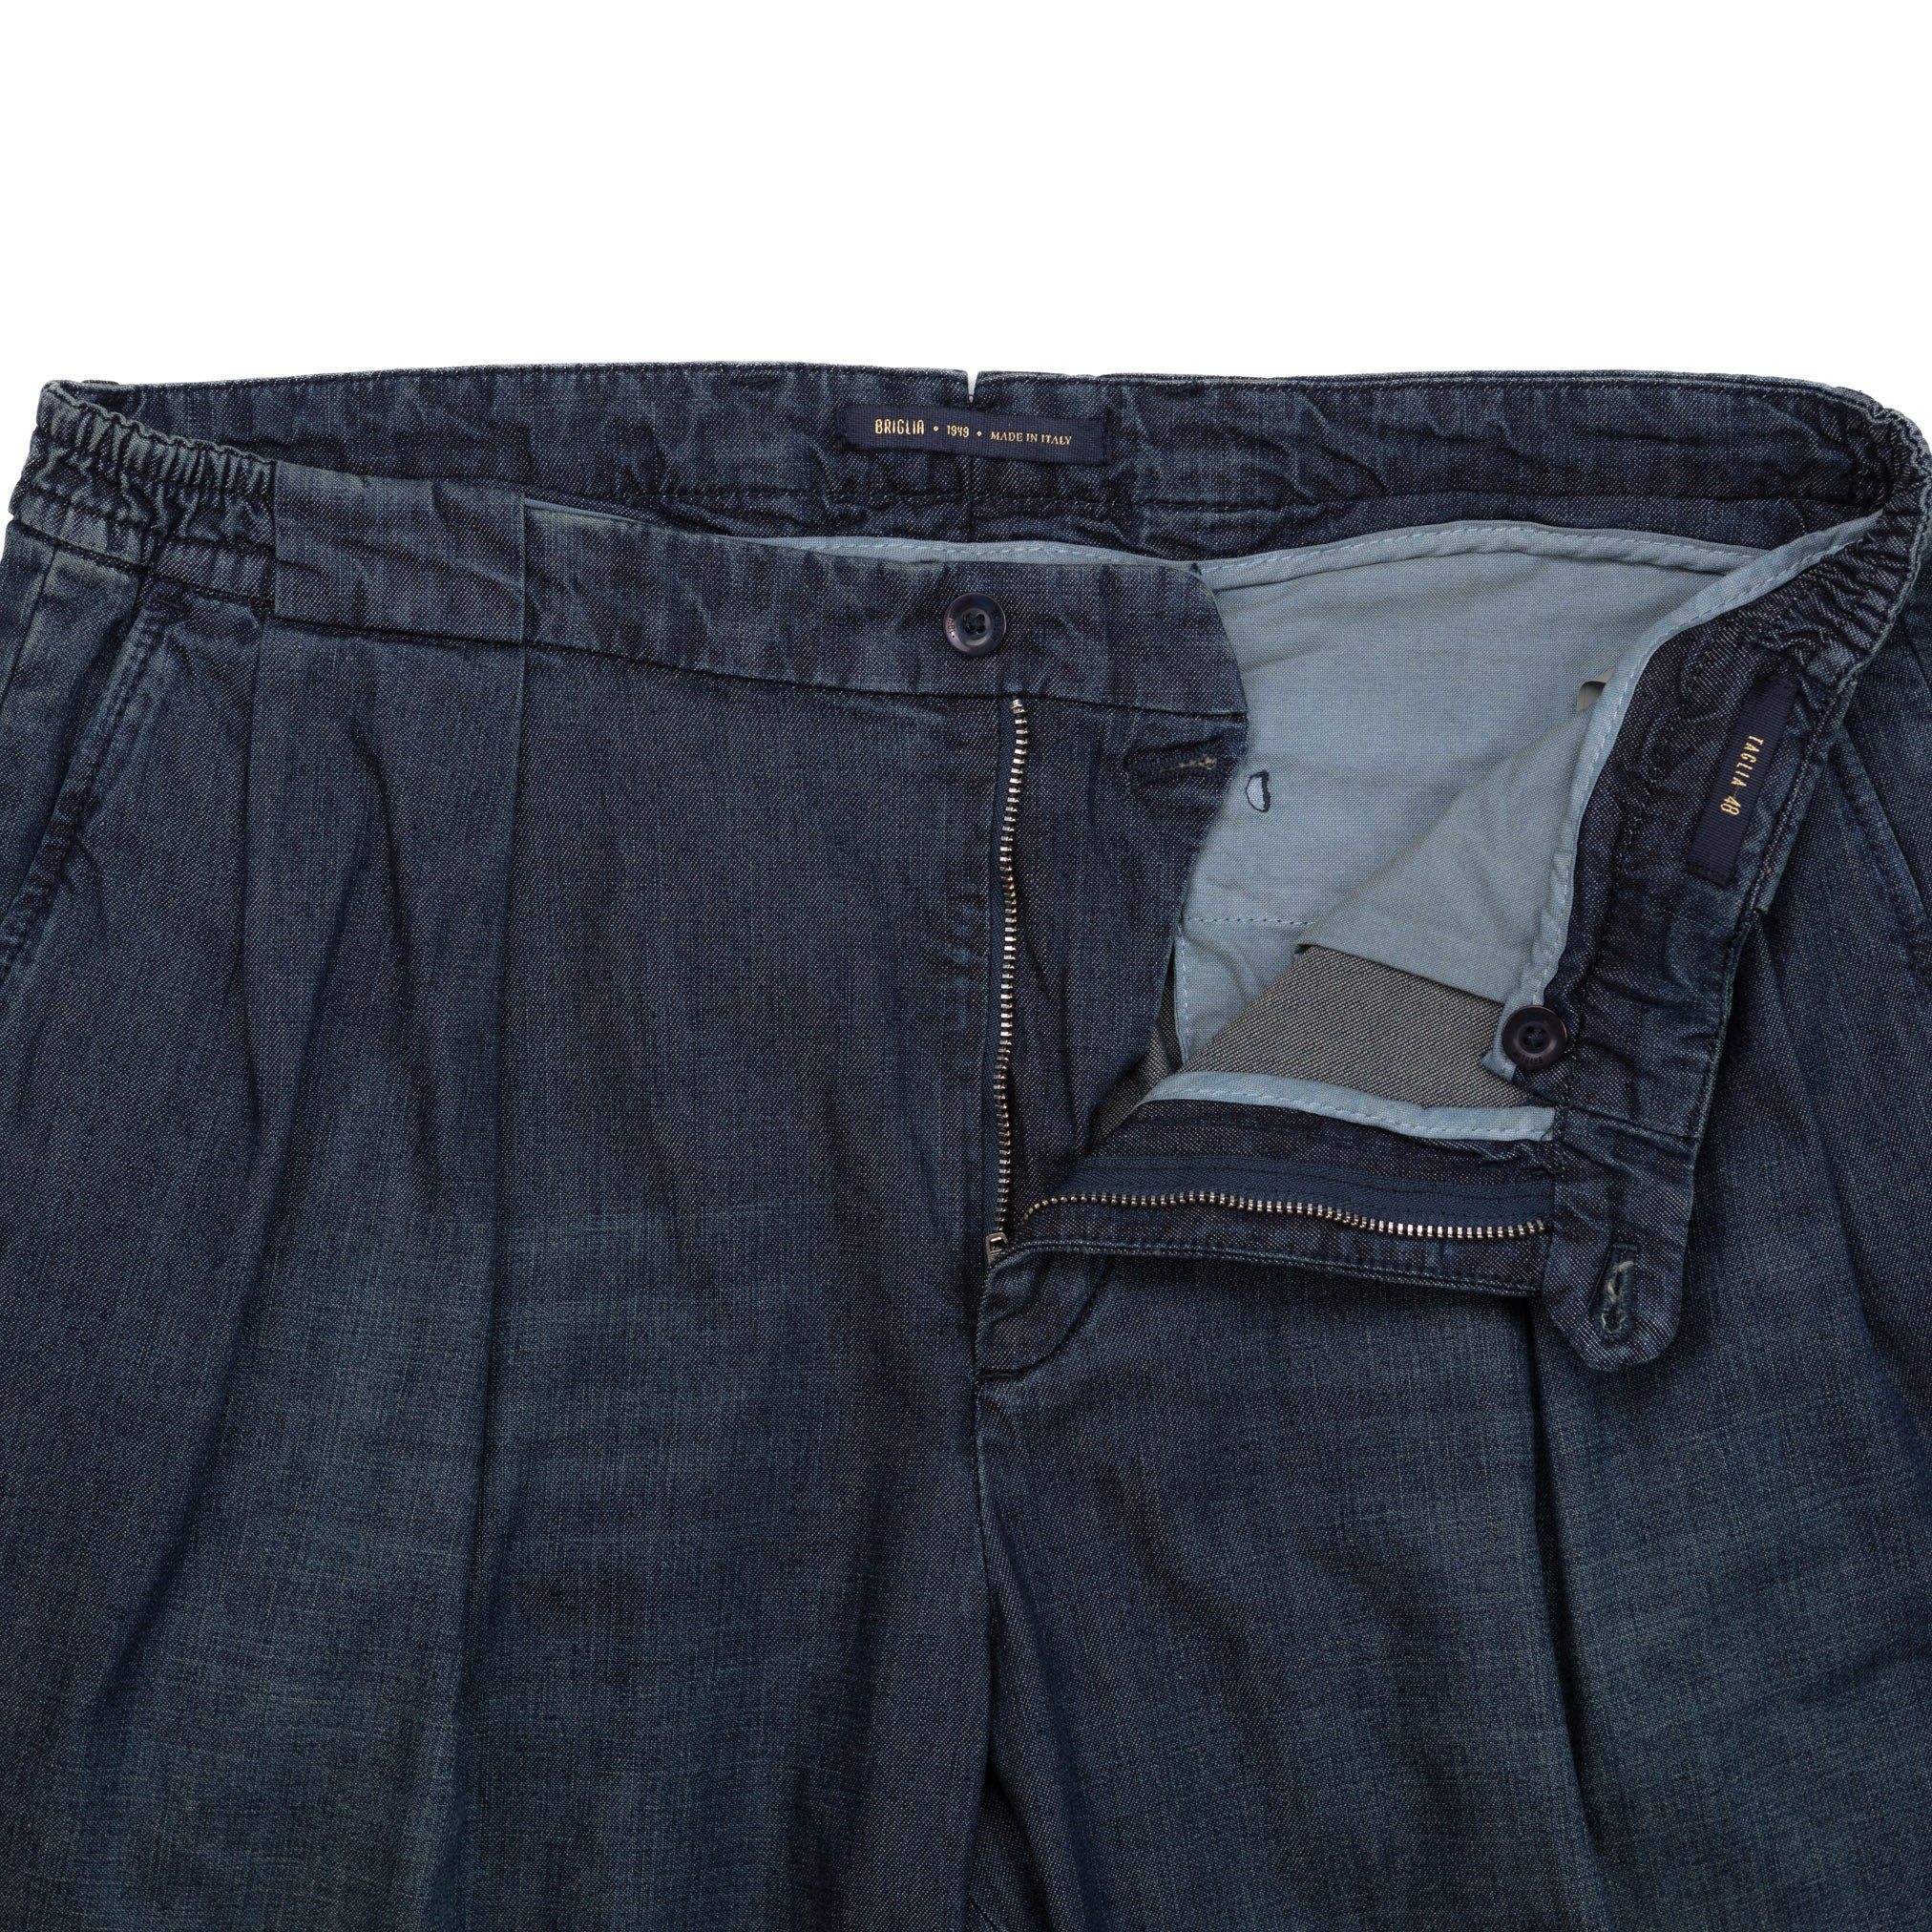 Portobello Pants in Washed Indigo